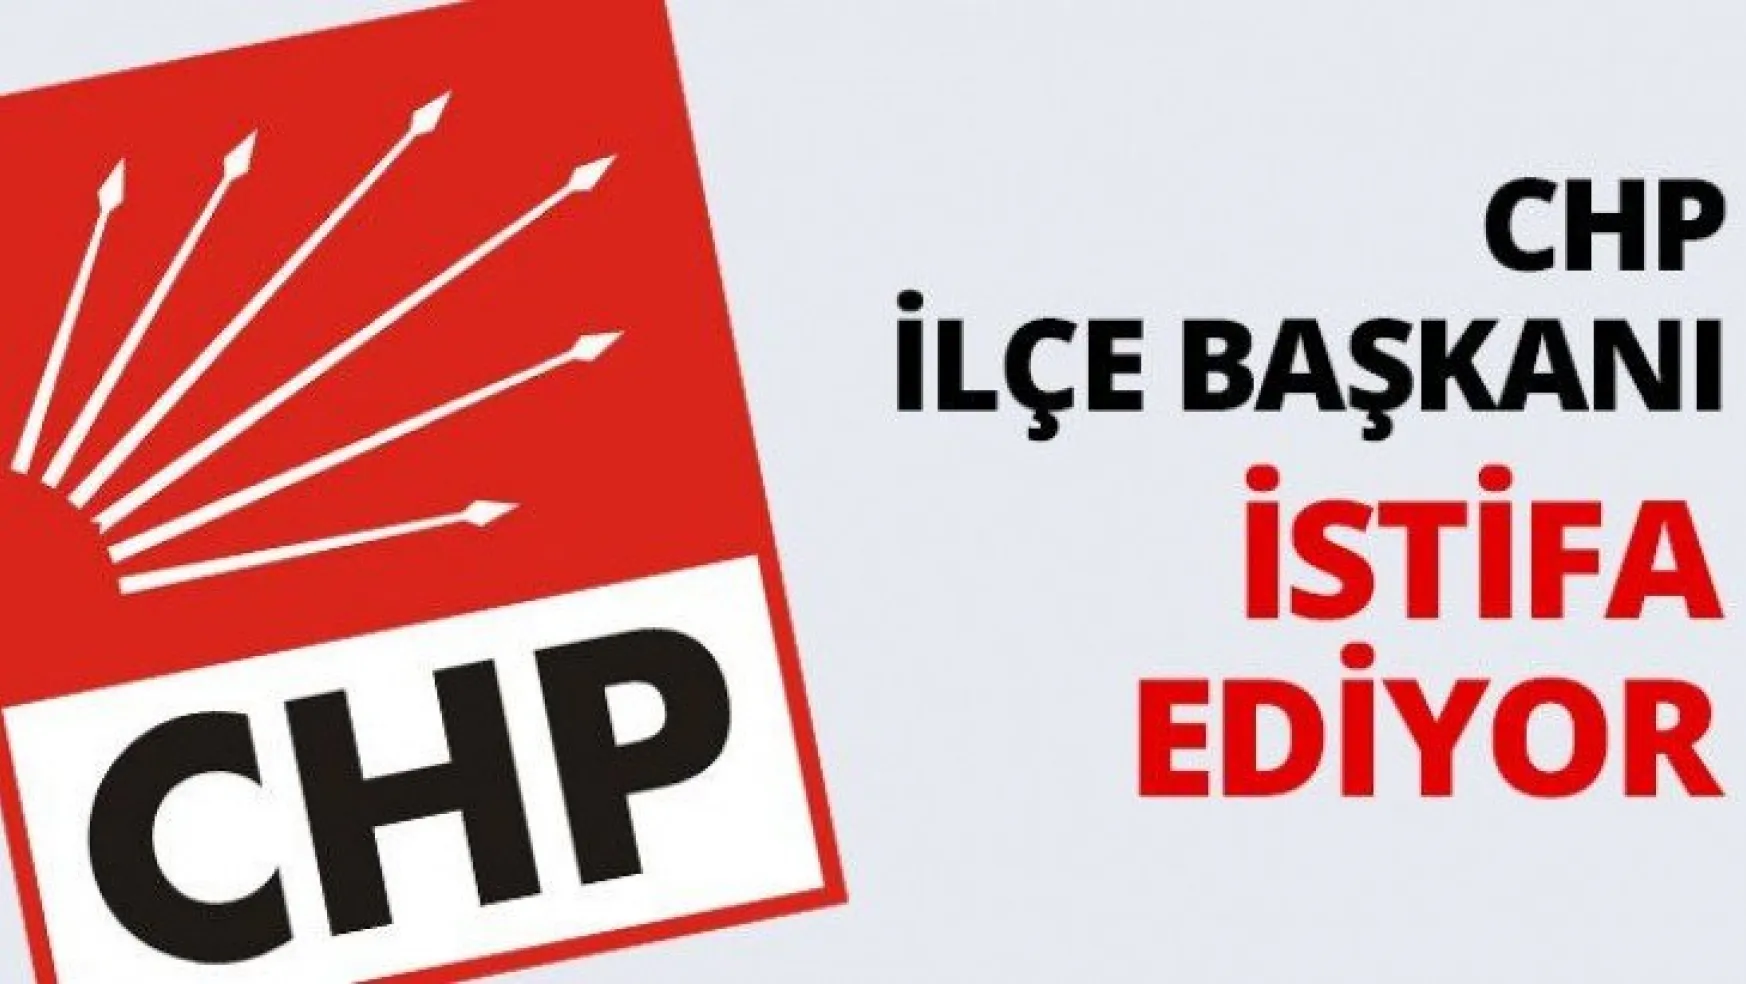 CHP İlçe Başkanı istifa ediyor